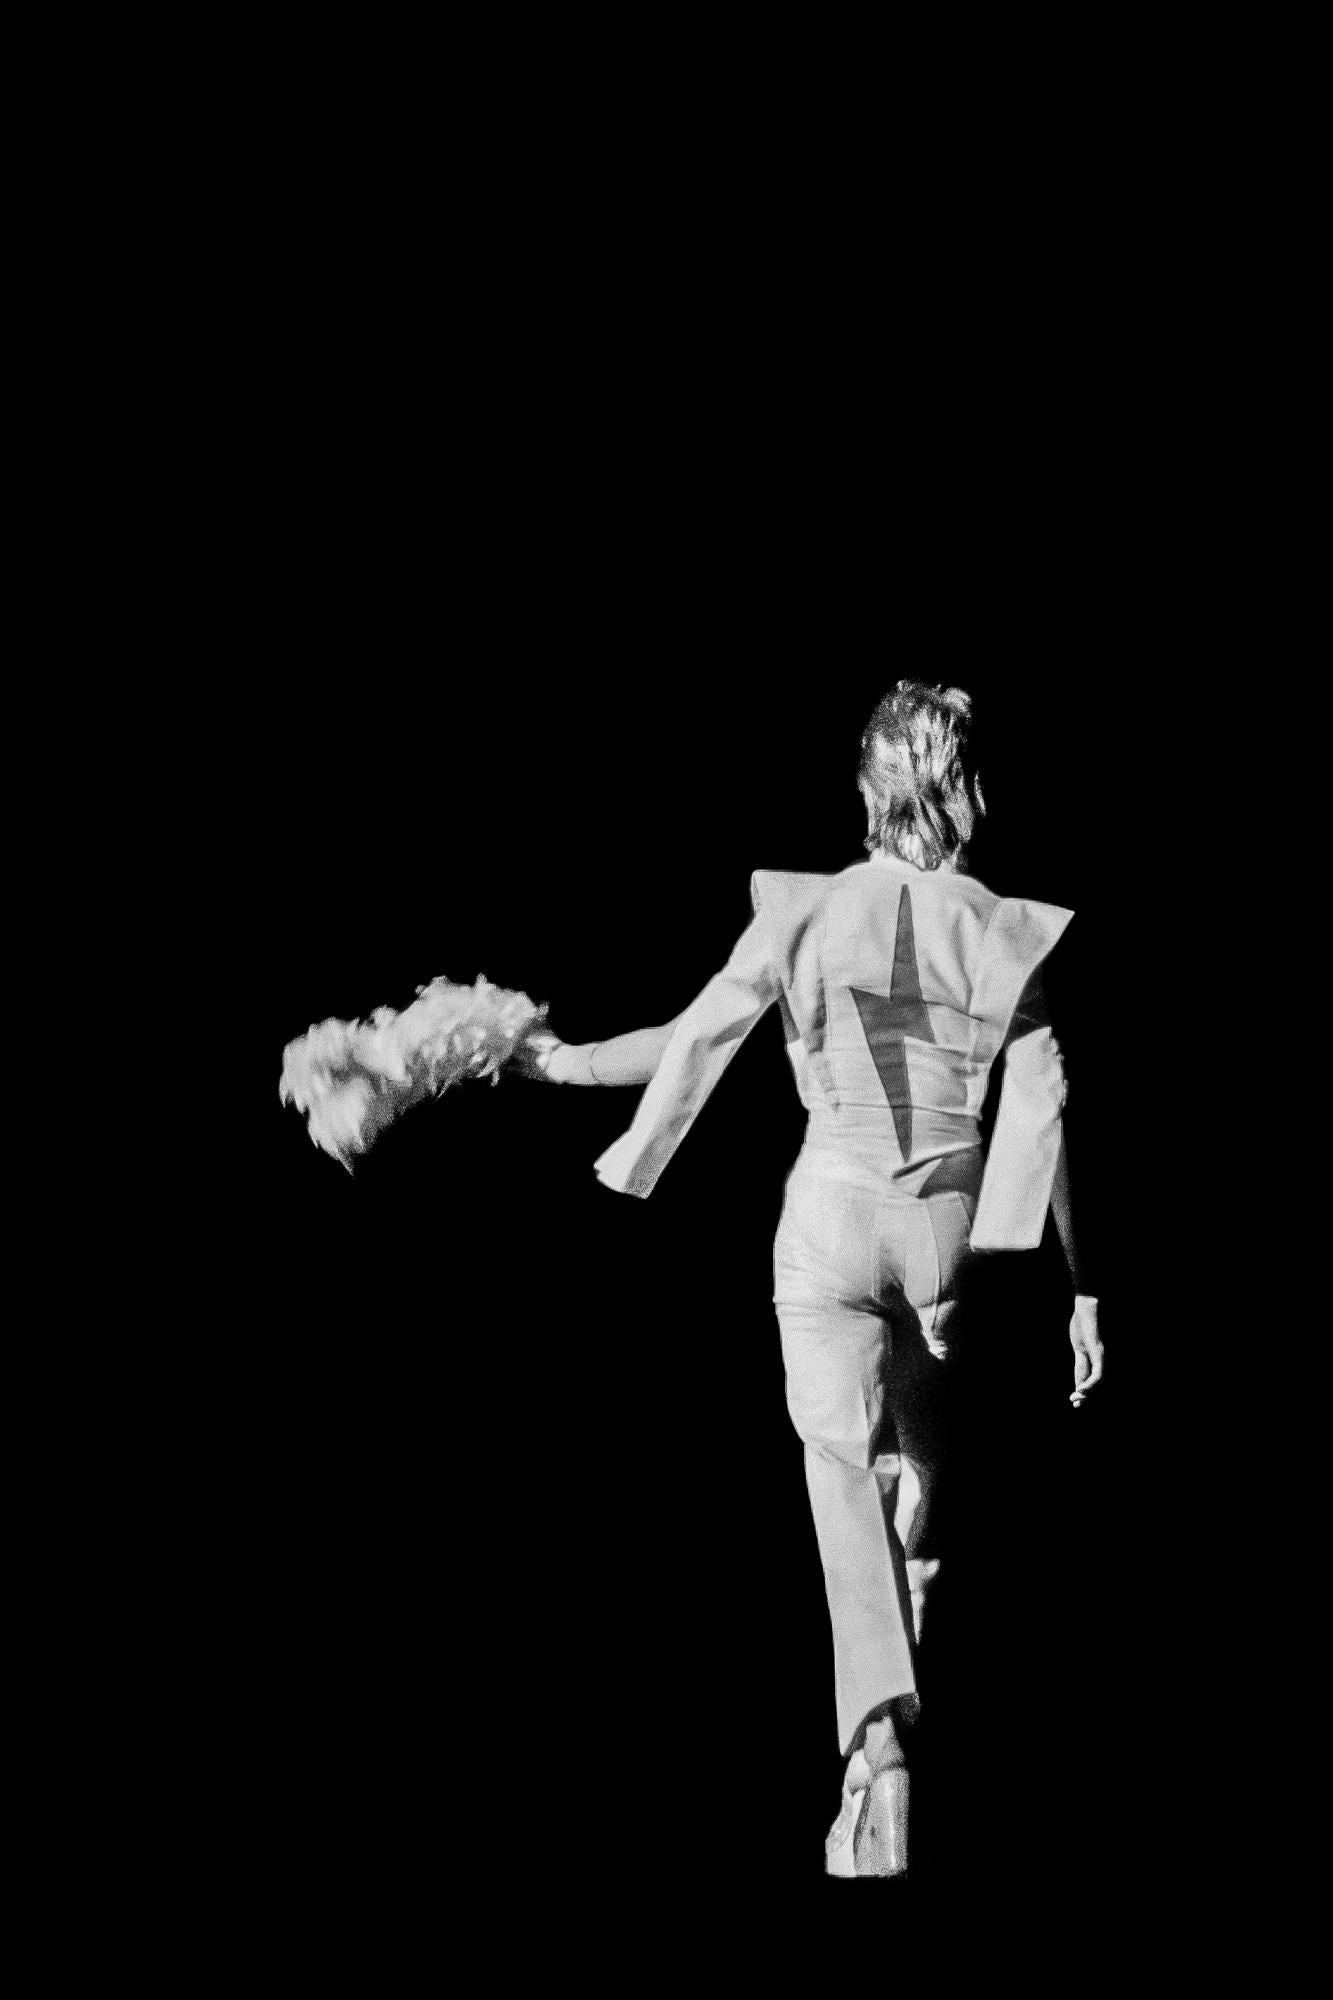 Tirage d'art de David Bowie par un photographe de renom. Lynn Goldsmith. Prise en 1973 lors de la tournée des Spiders from Marli, et maintenant disponible pour la première fois en noir et blanc.

Lynn Goldsmith ne produit que 20 tirages de ses